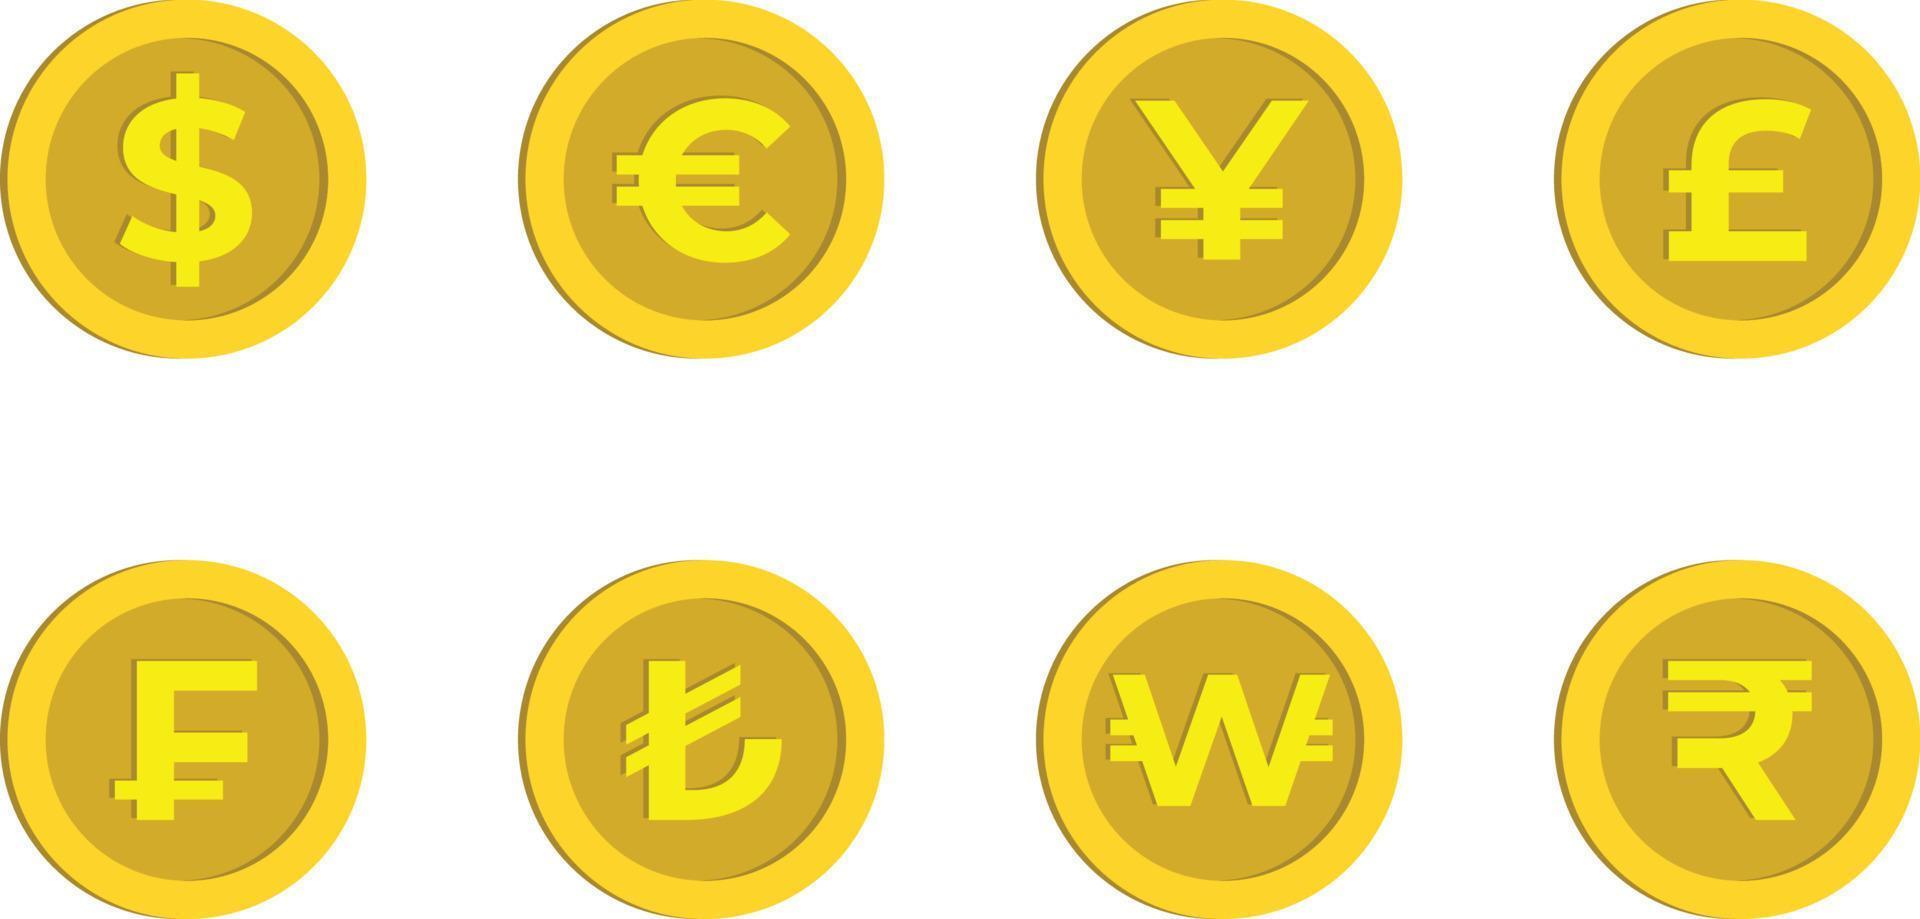 dollaro, euro, yen, sterlina, franco, lira turca, vinto e rupia segno moneta d'oro cartone animato, valuta denaro vettore